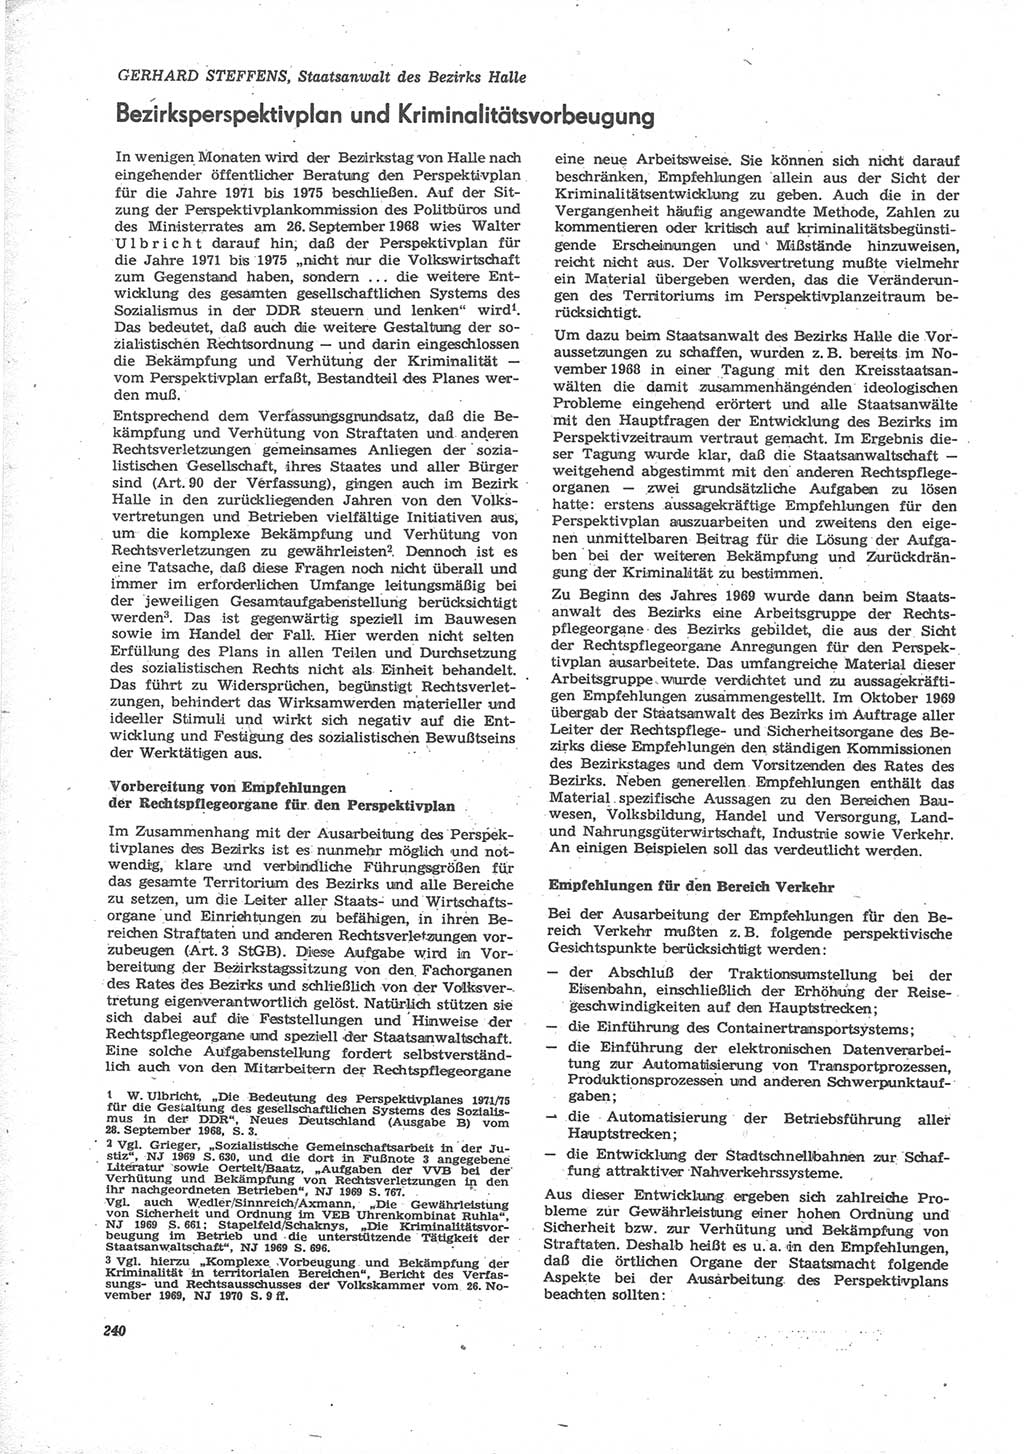 Neue Justiz (NJ), Zeitschrift für Recht und Rechtswissenschaft [Deutsche Demokratische Republik (DDR)], 24. Jahrgang 1970, Seite 240 (NJ DDR 1970, S. 240)